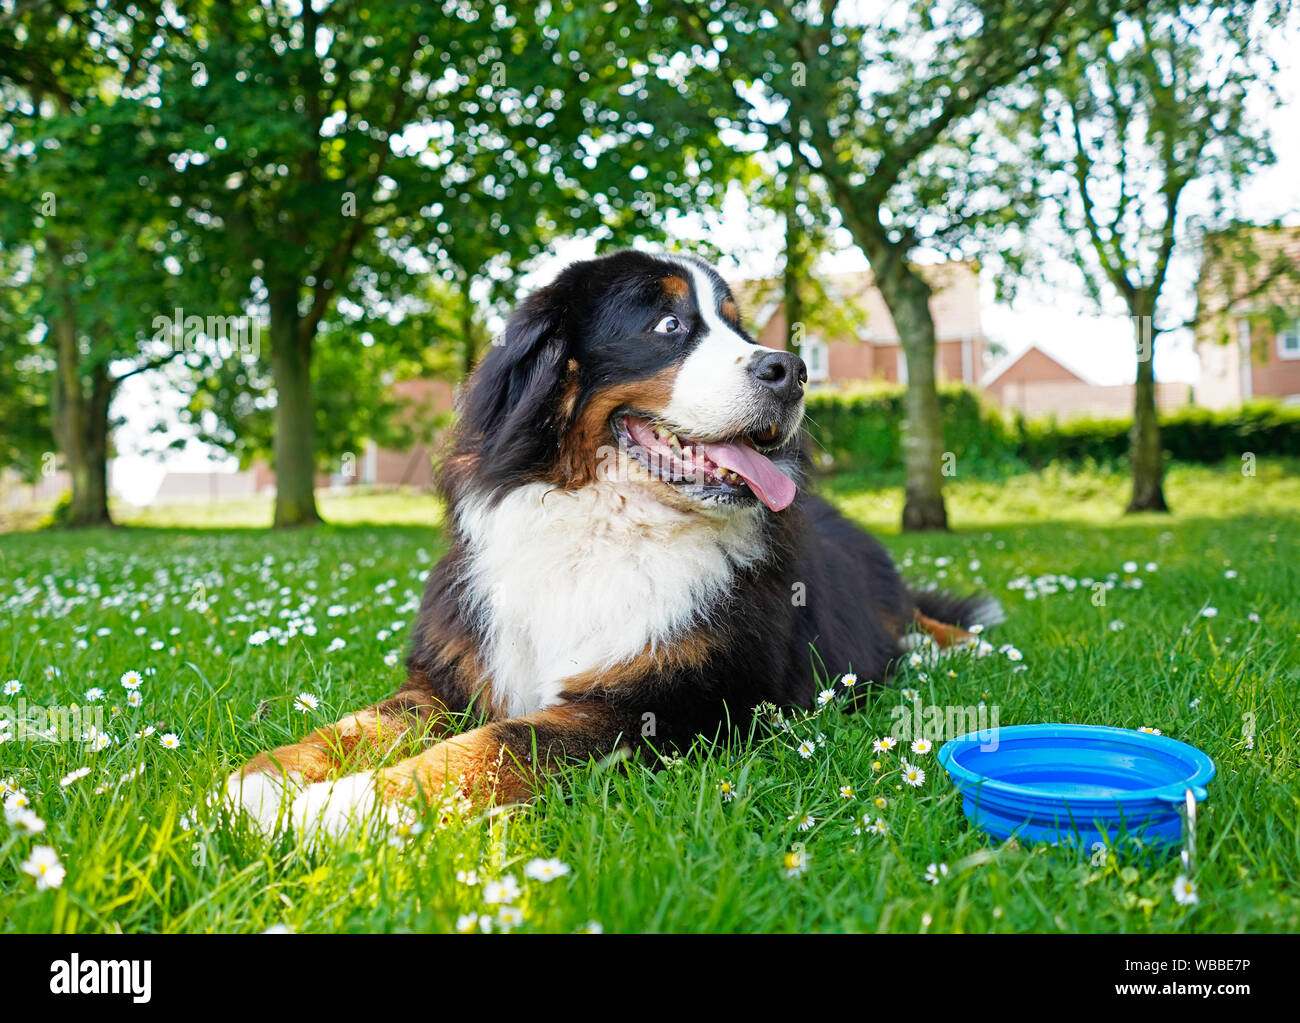 Große Berner Sennenhund liegend auf dem grünen Rasen mit weißen Blumen, blaue Wasser Schüssel neben ihm. Stockfoto